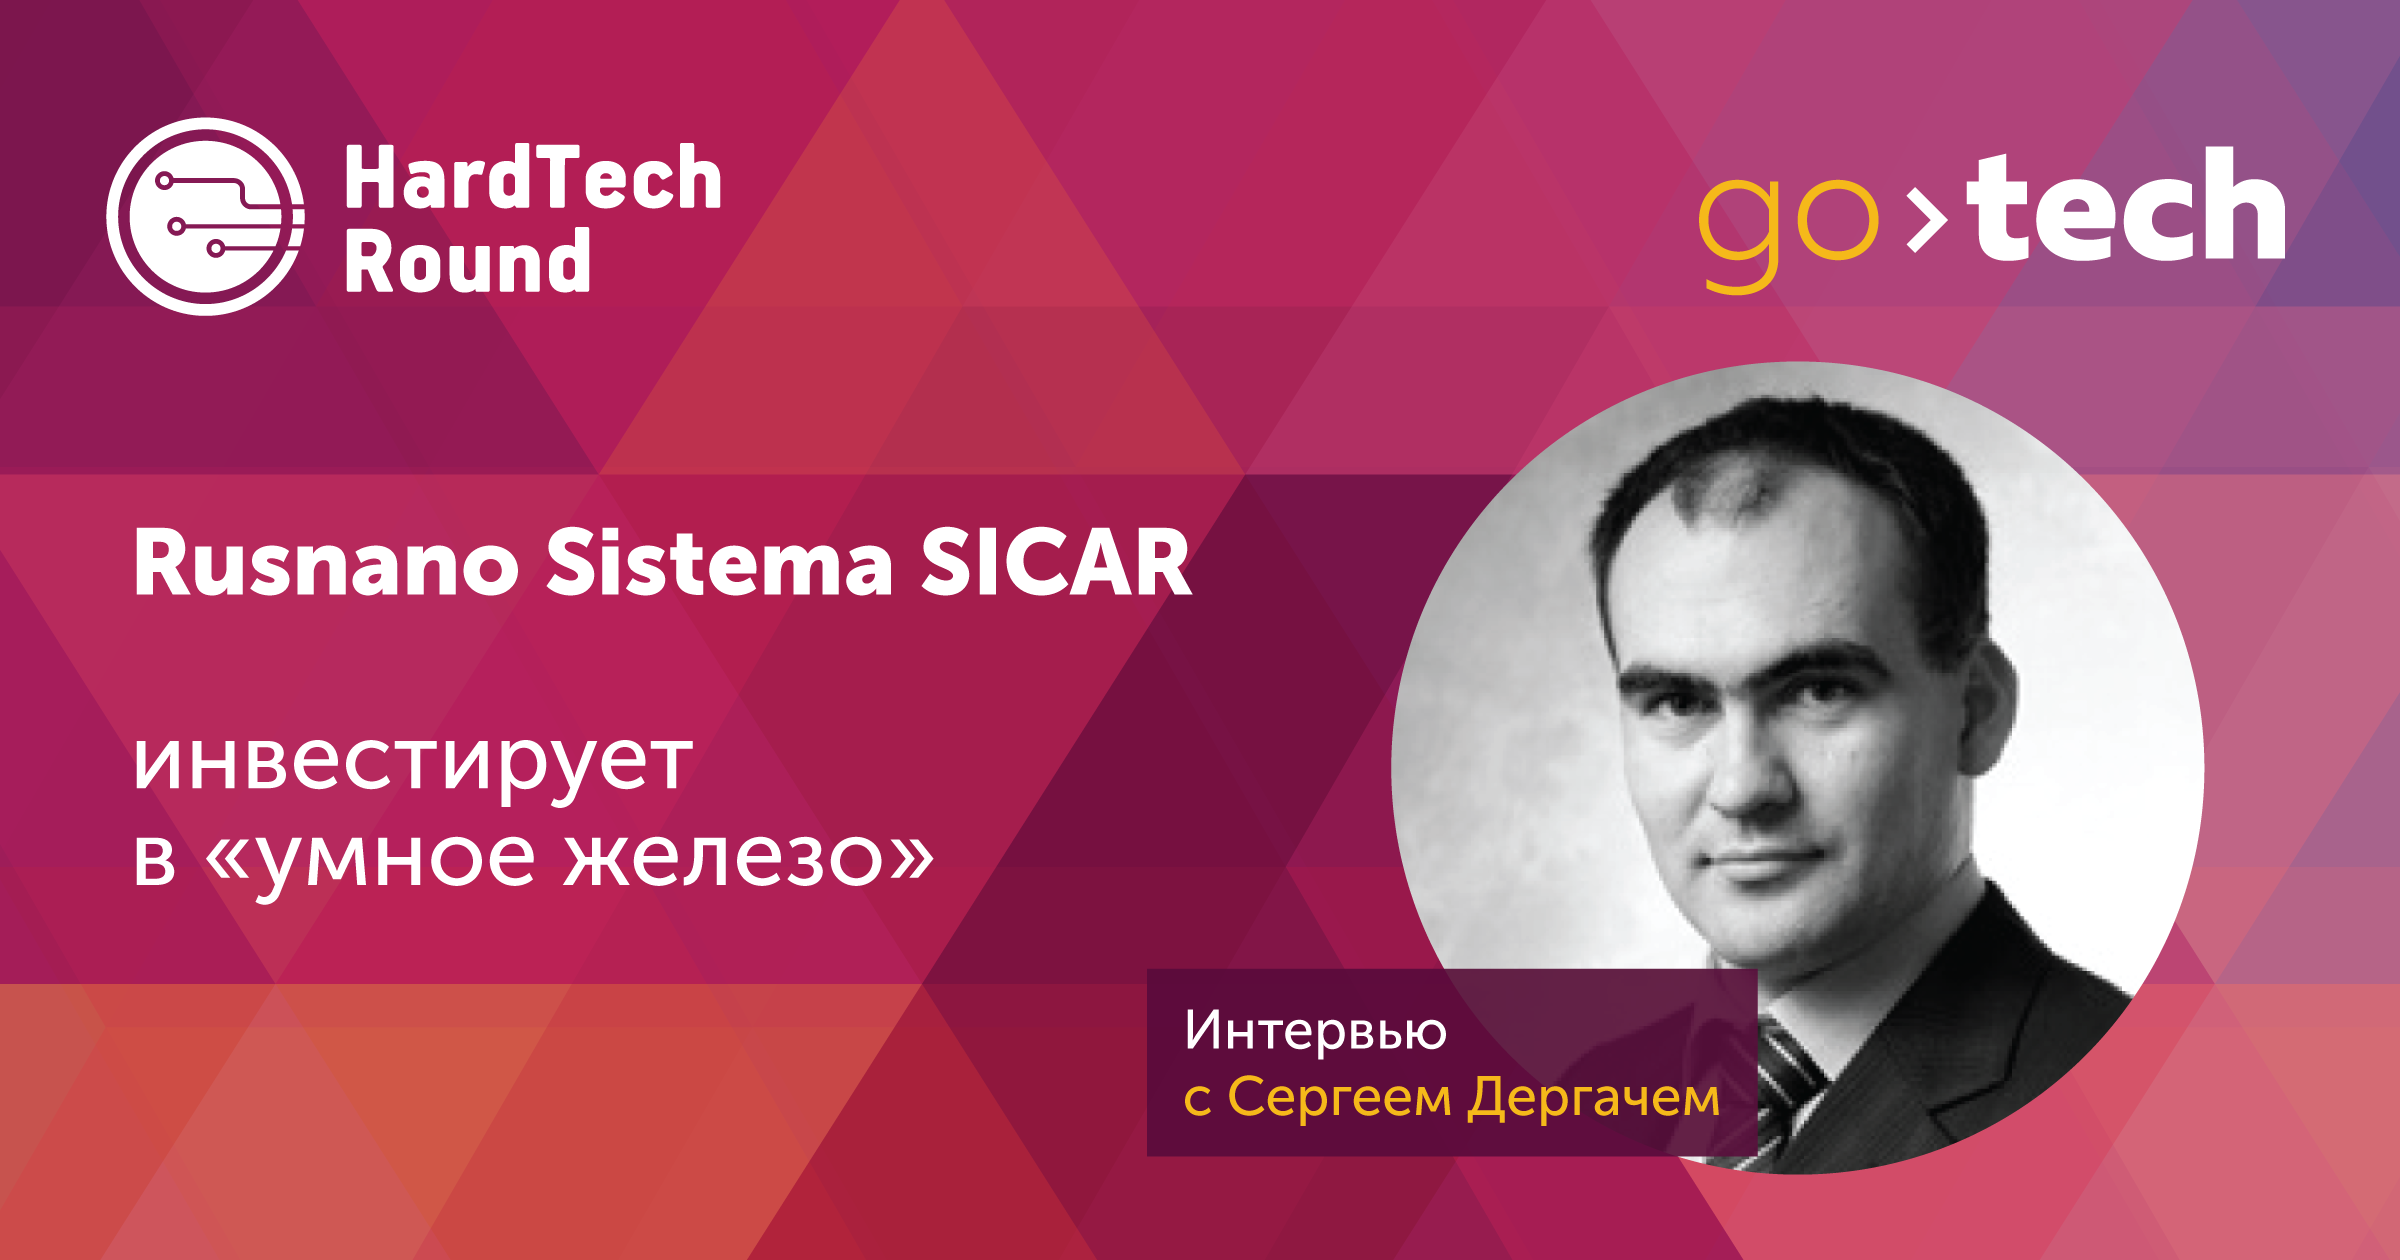 Интервью: Rusnano Sistema SICAR инвестирует в «умное железо»